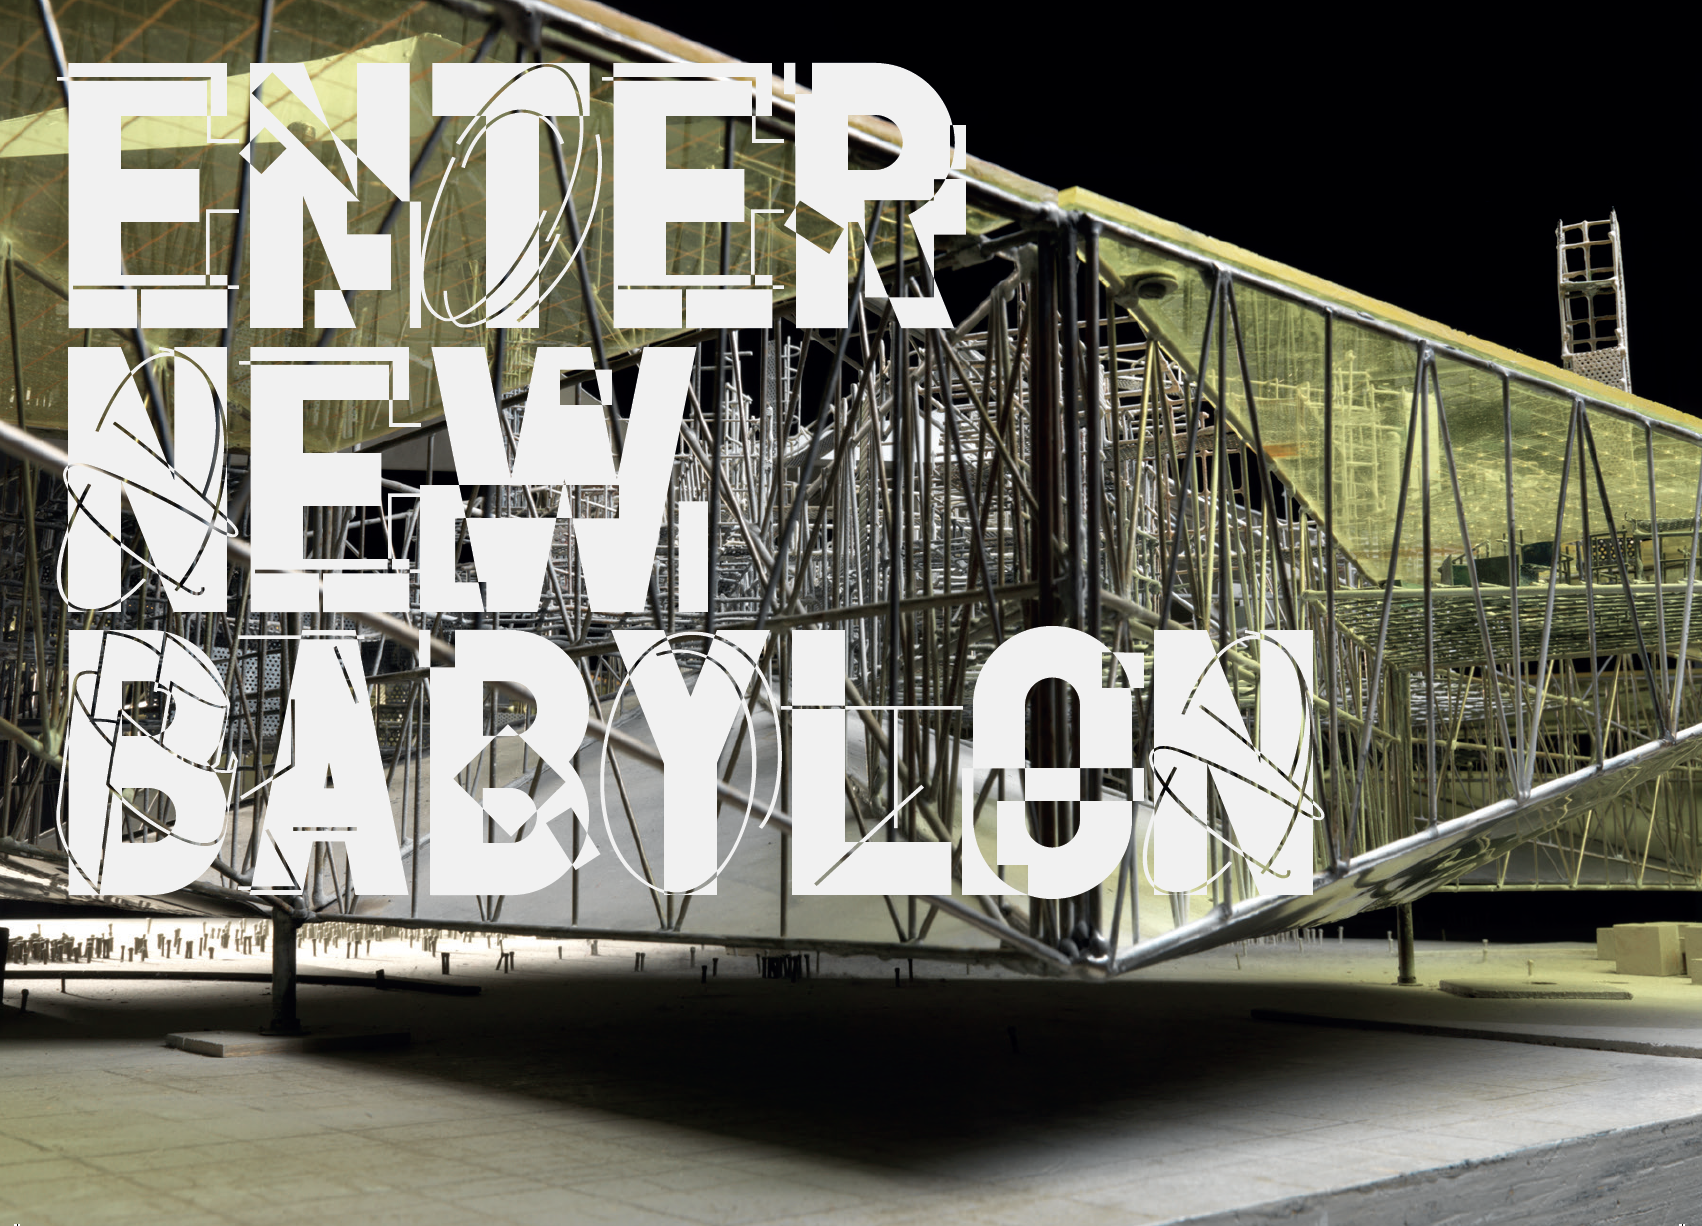 Enter New Babylon